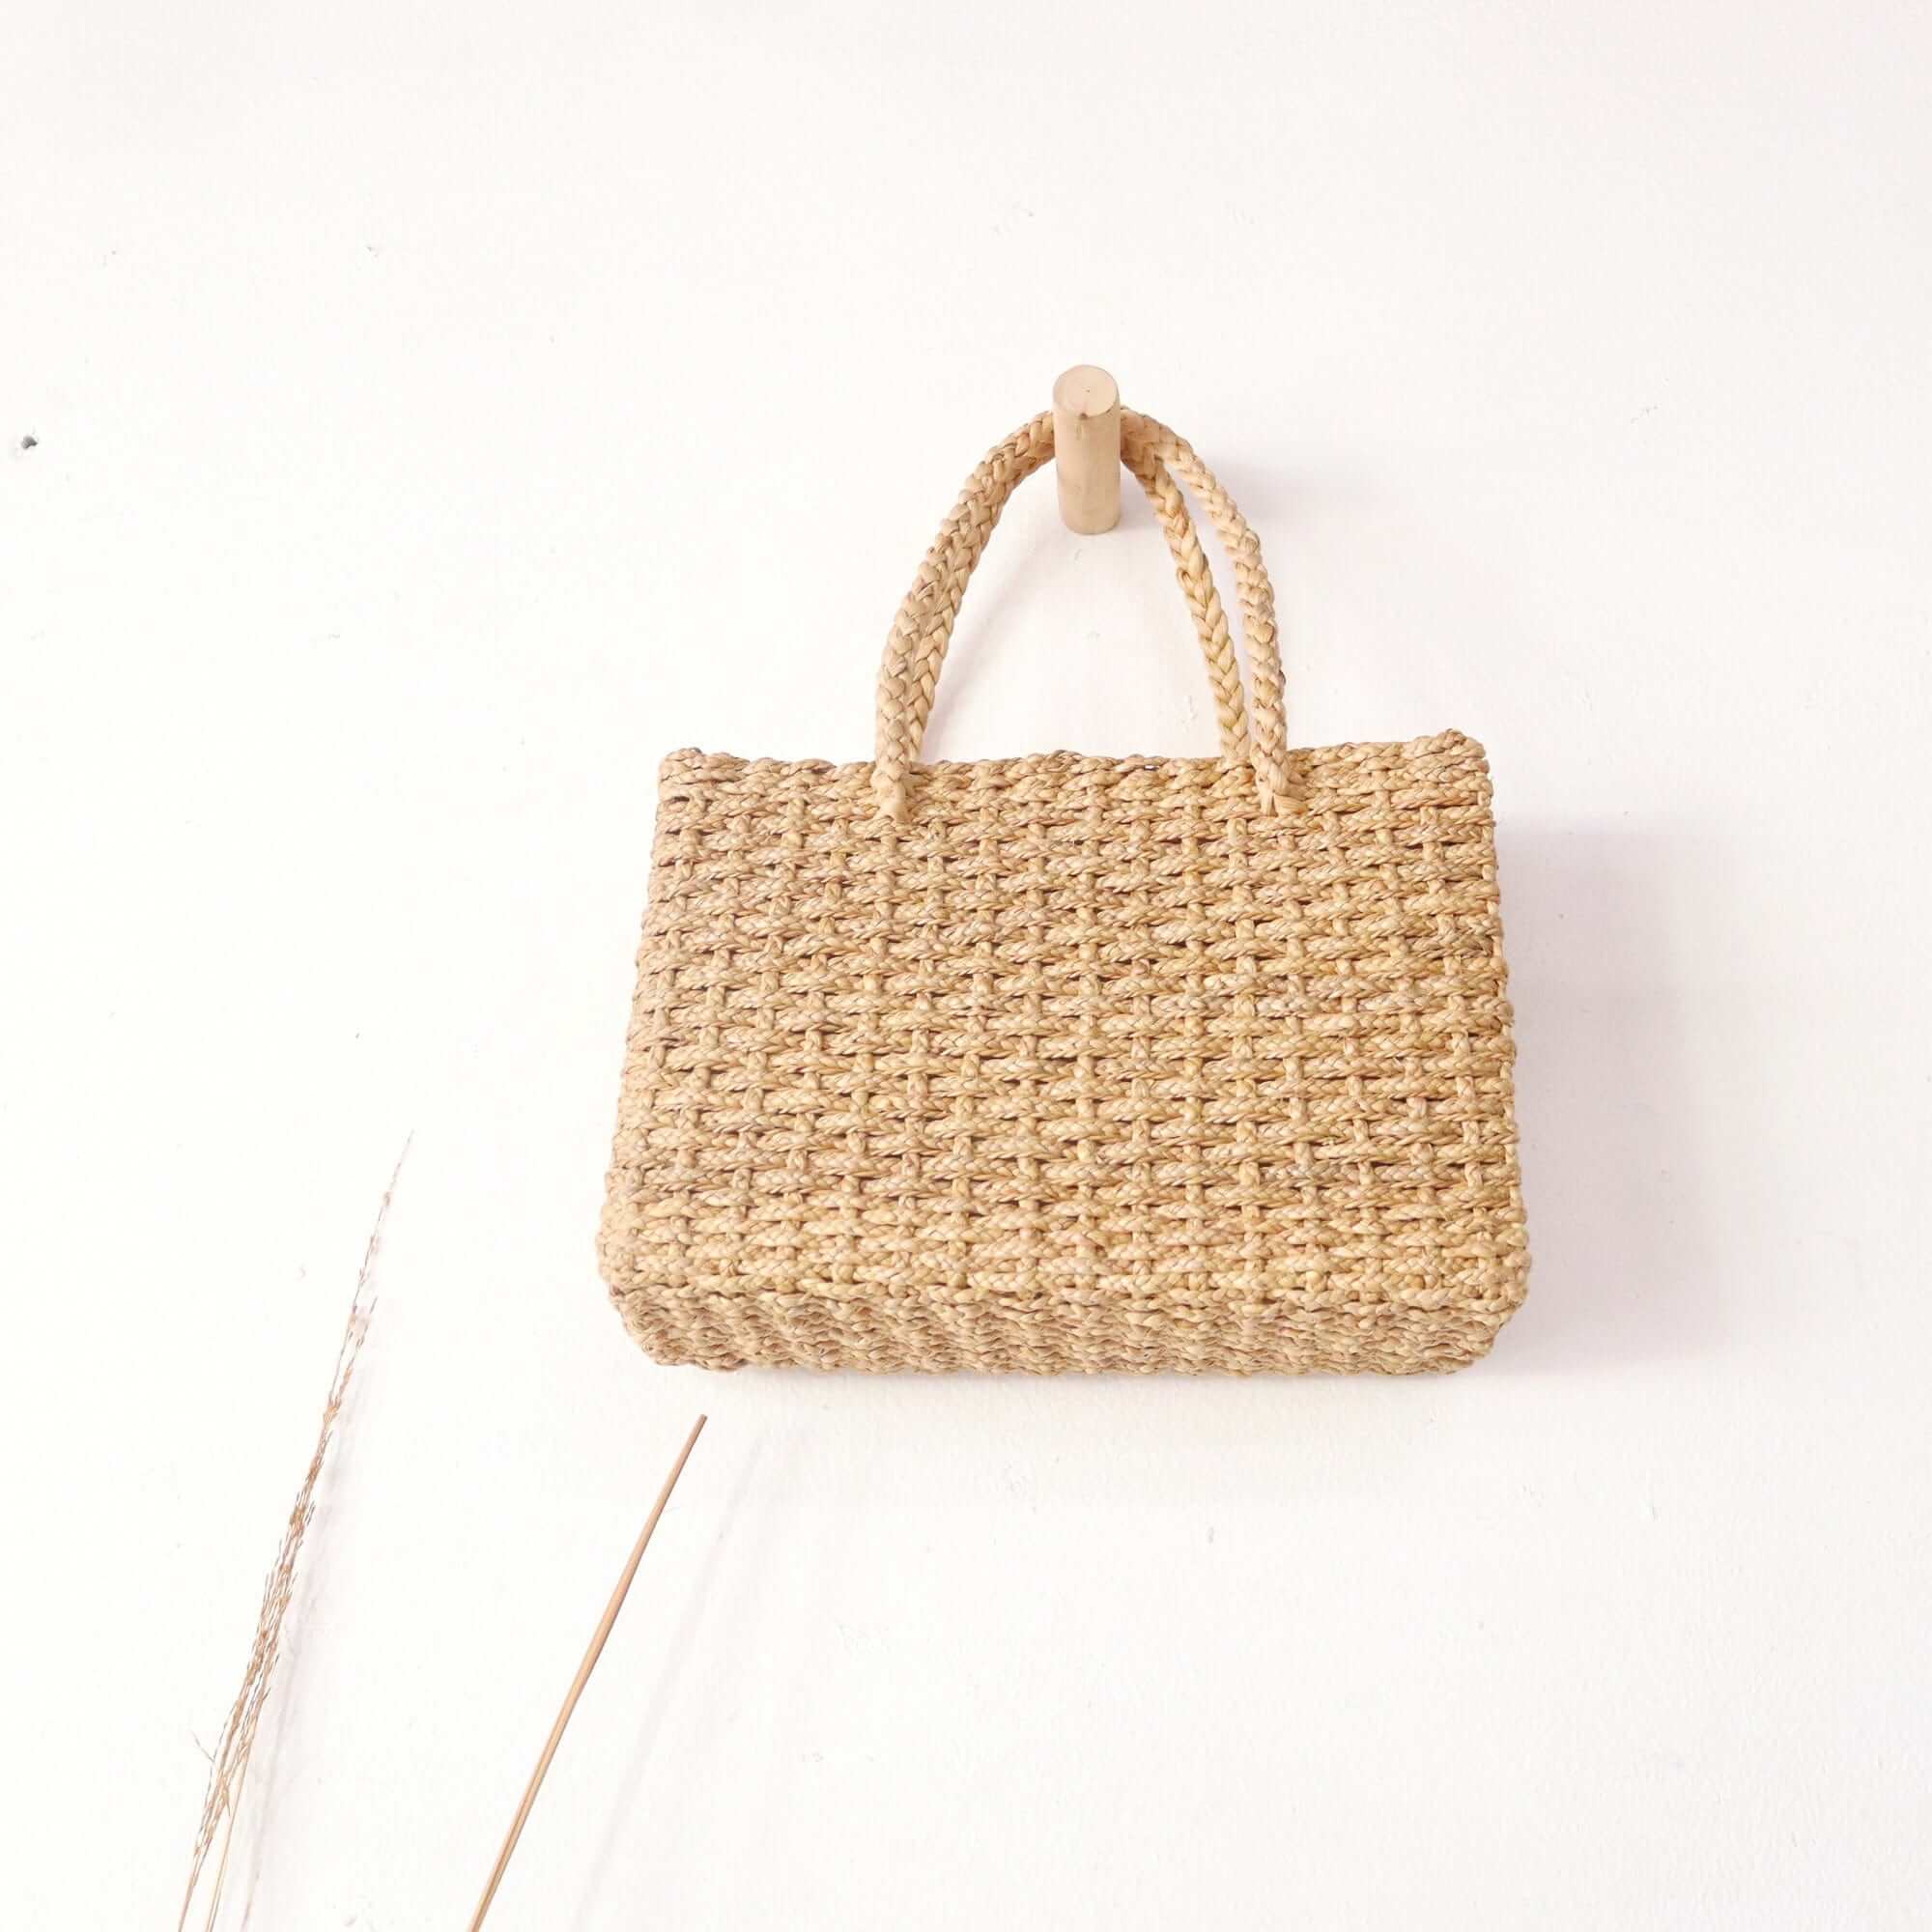 BEAU - Straw Basket Bag